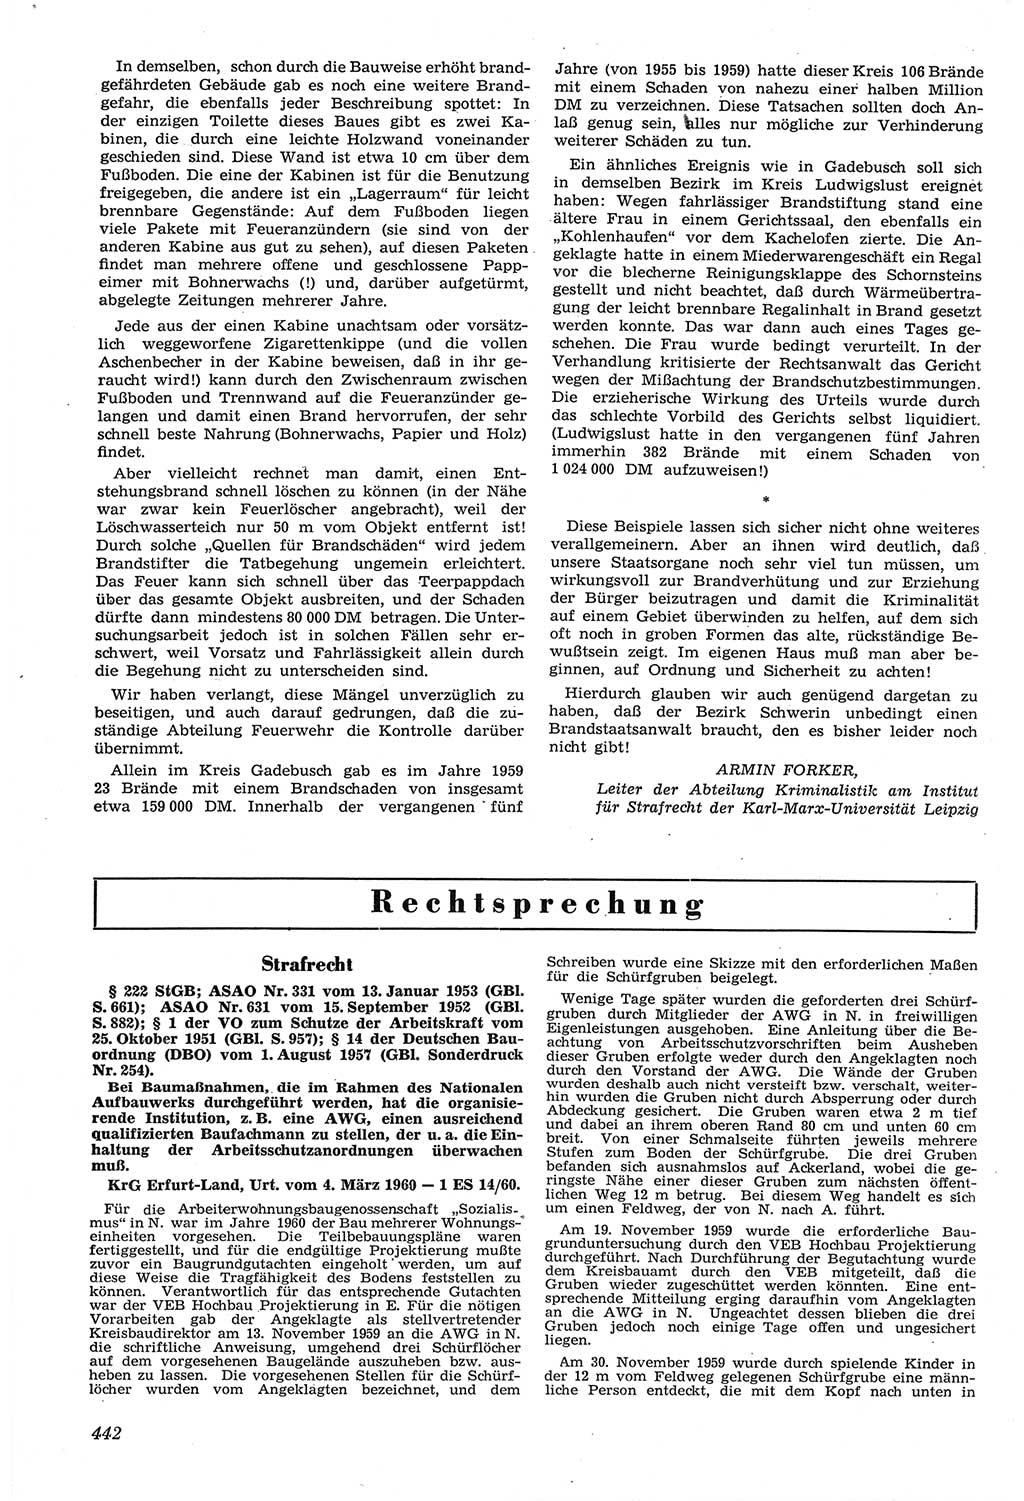 Neue Justiz (NJ), Zeitschrift für Recht und Rechtswissenschaft [Deutsche Demokratische Republik (DDR)], 14. Jahrgang 1960, Seite 442 (NJ DDR 1960, S. 442)